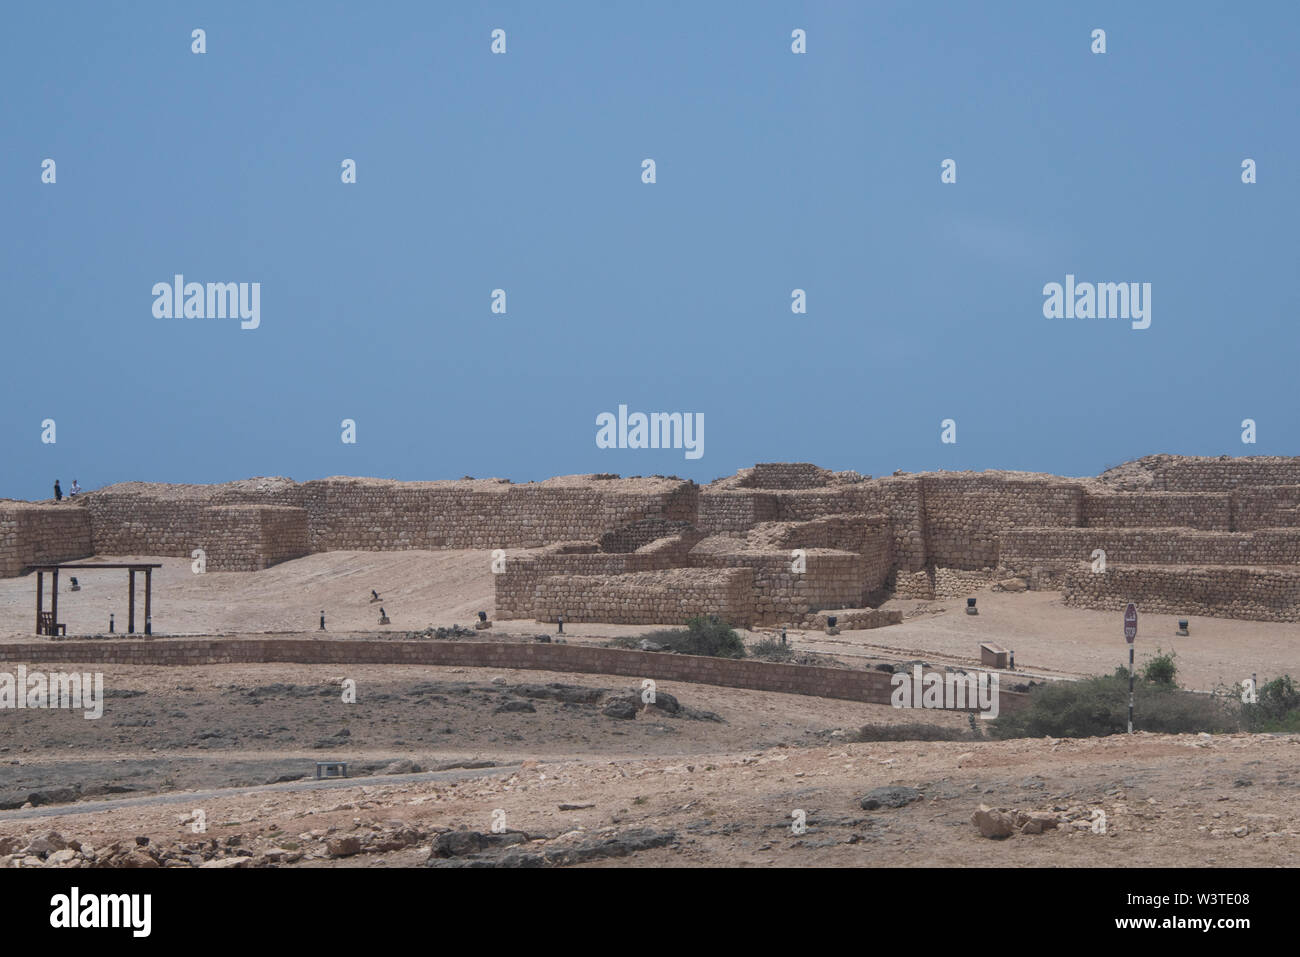 Oman und Dhofar, in der Nähe von Salalah, Khor Rori. Ruinen der alten vor-islamische Siedlung Sumhuram, Teil des historischen Weihrauch Trail, der UNESCO. Stockfoto